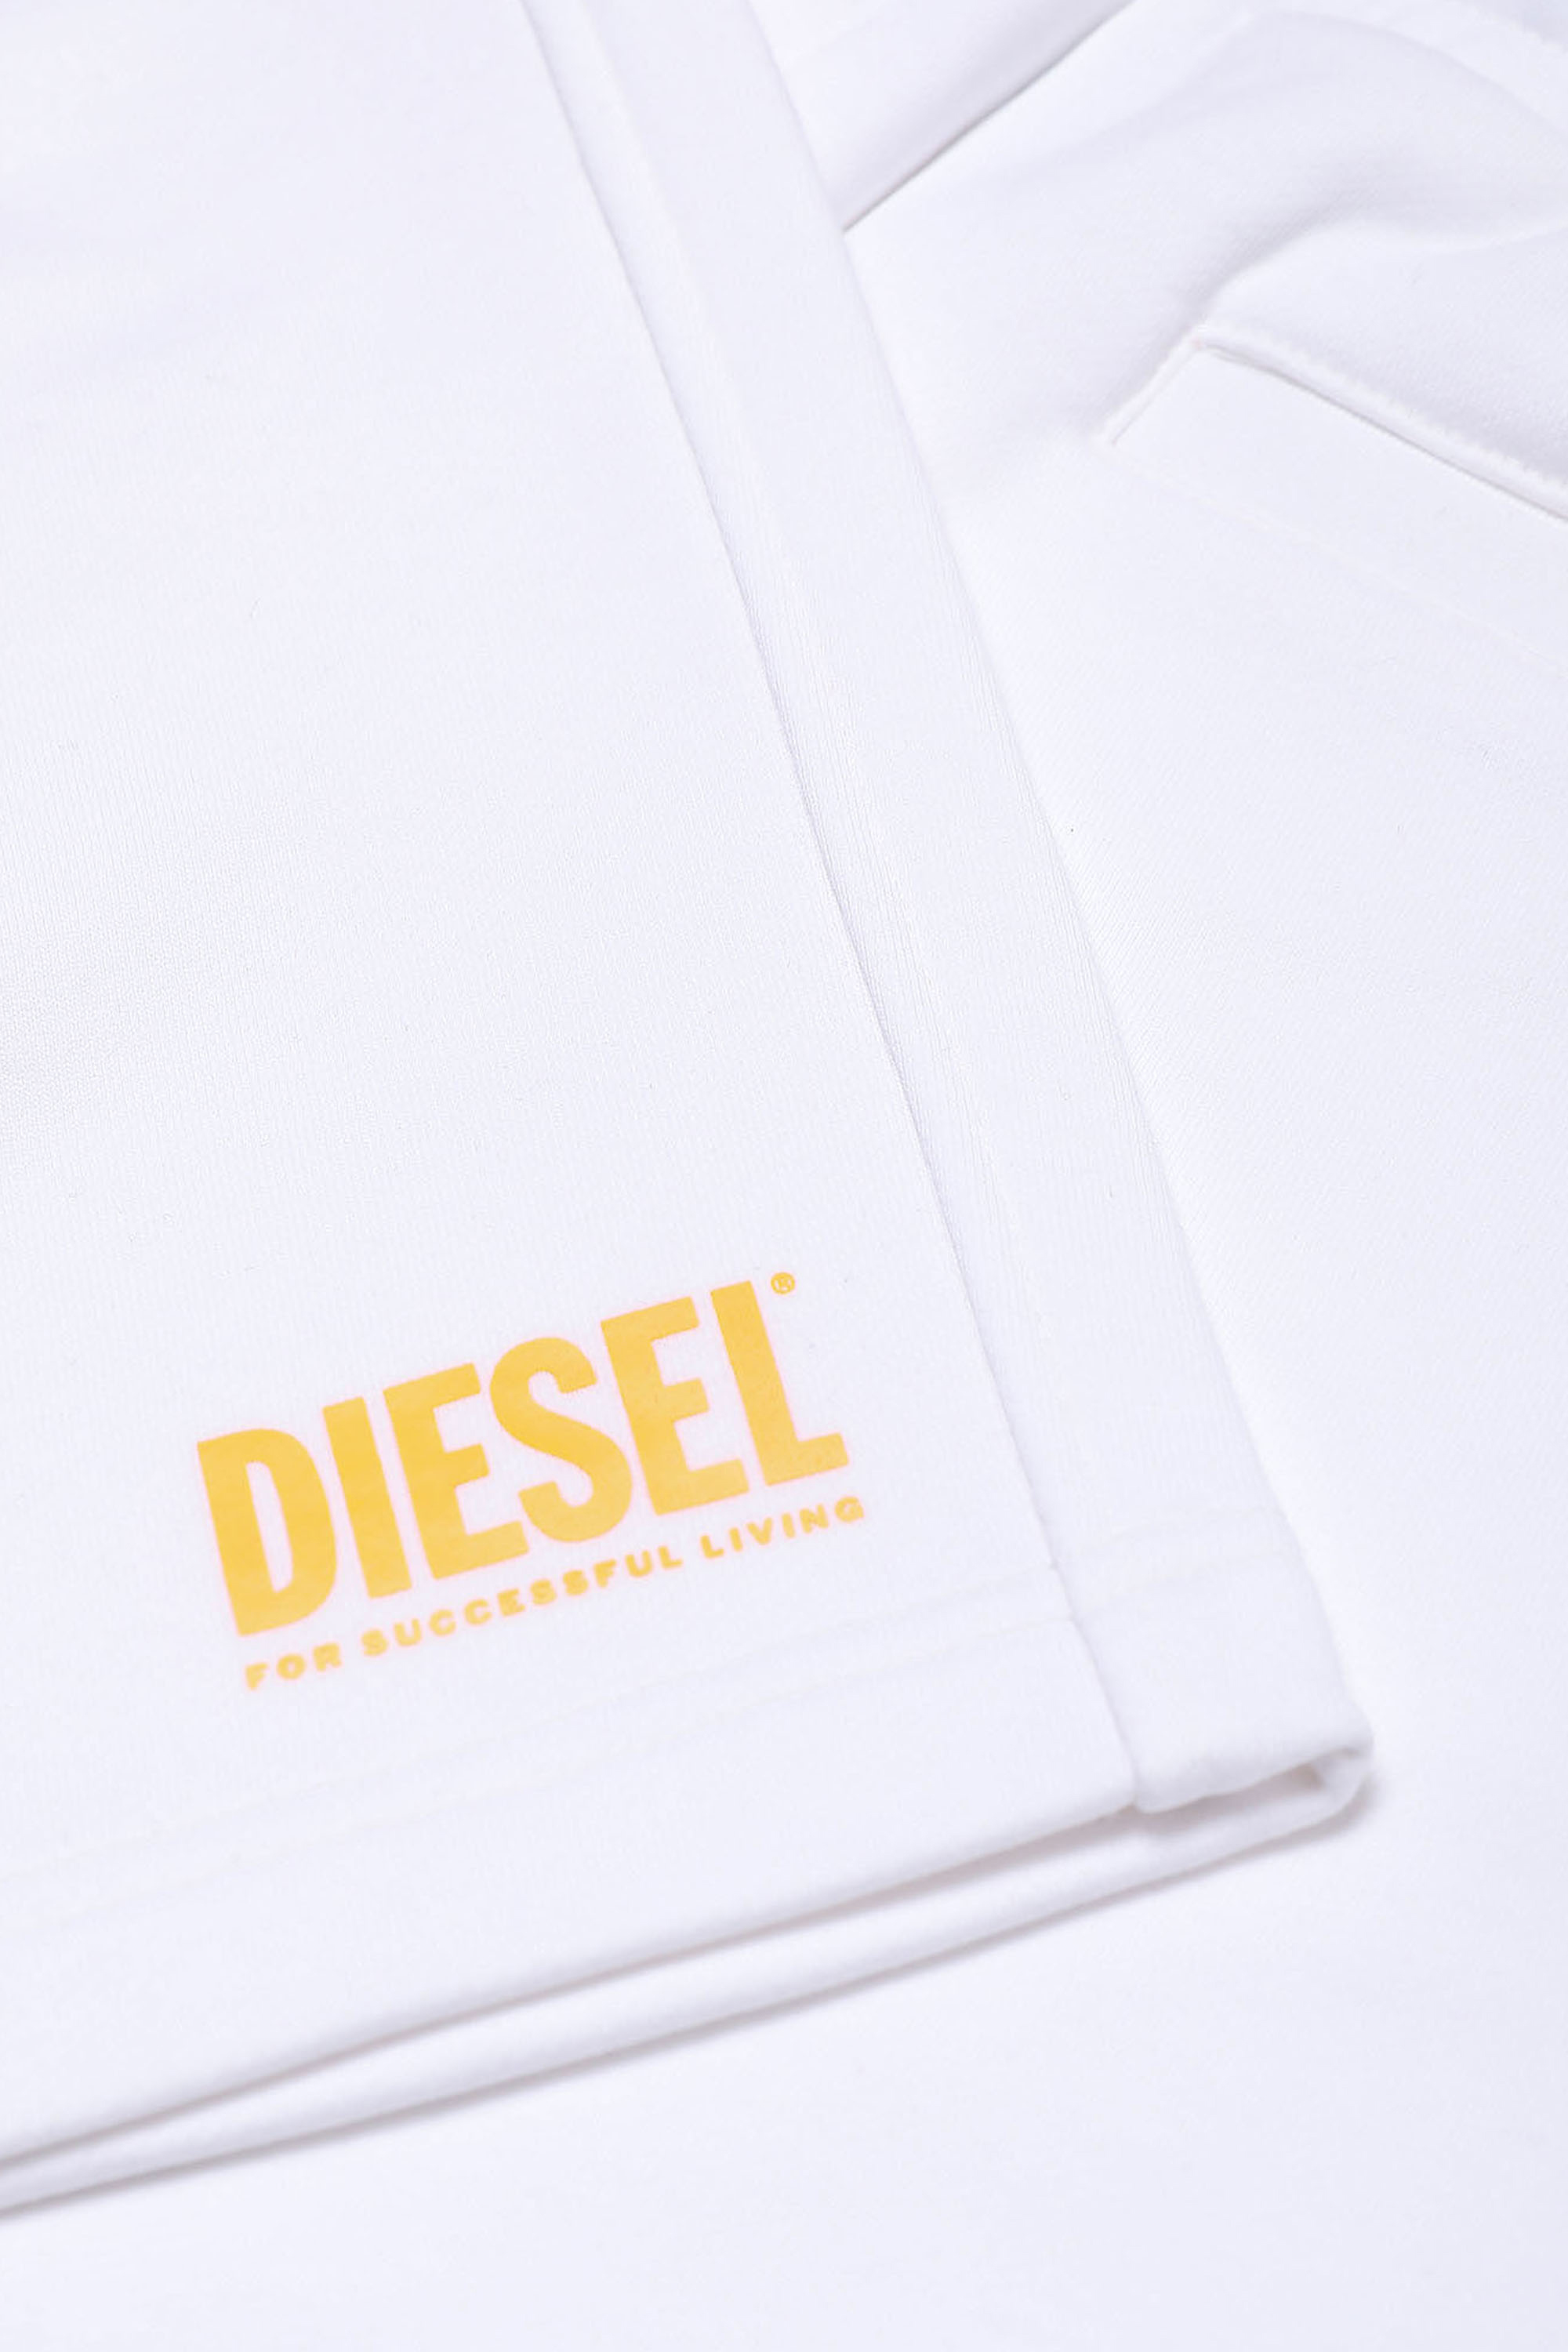 Diesel - PCROWN, Bianco - Image 3